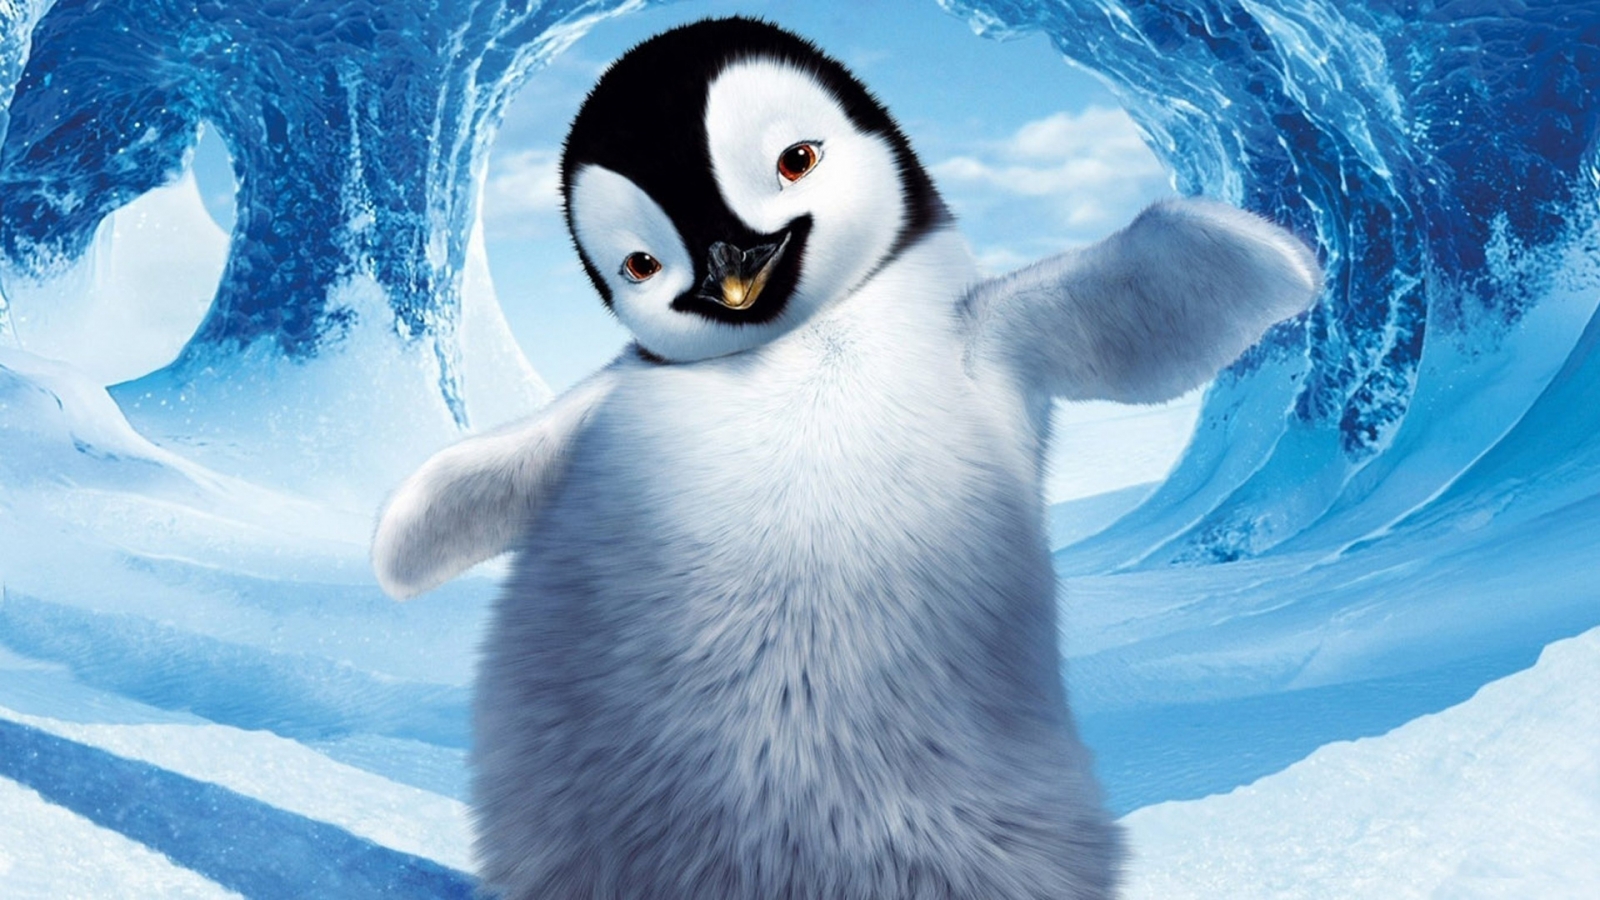 Happy Feet Penguin for 1600 x 900 HDTV resolution